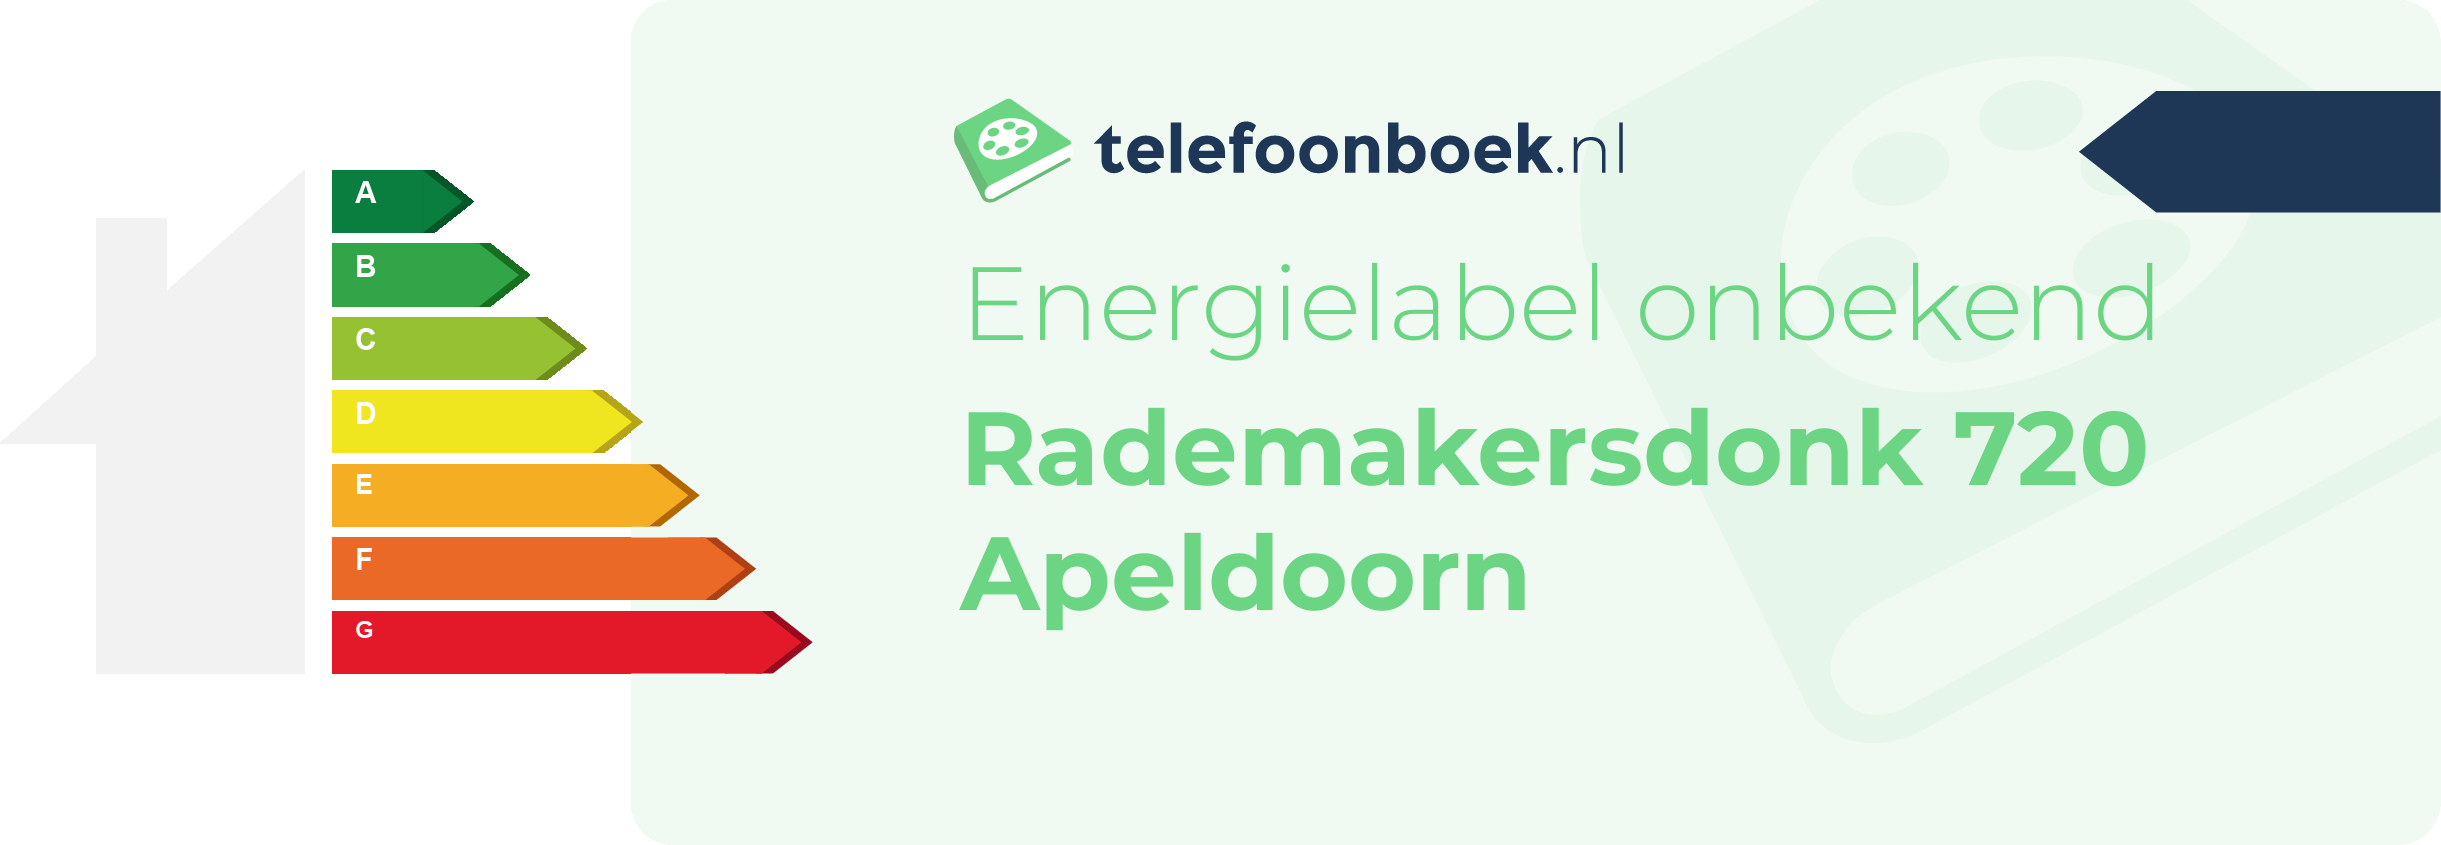 Energielabel Rademakersdonk 720 Apeldoorn